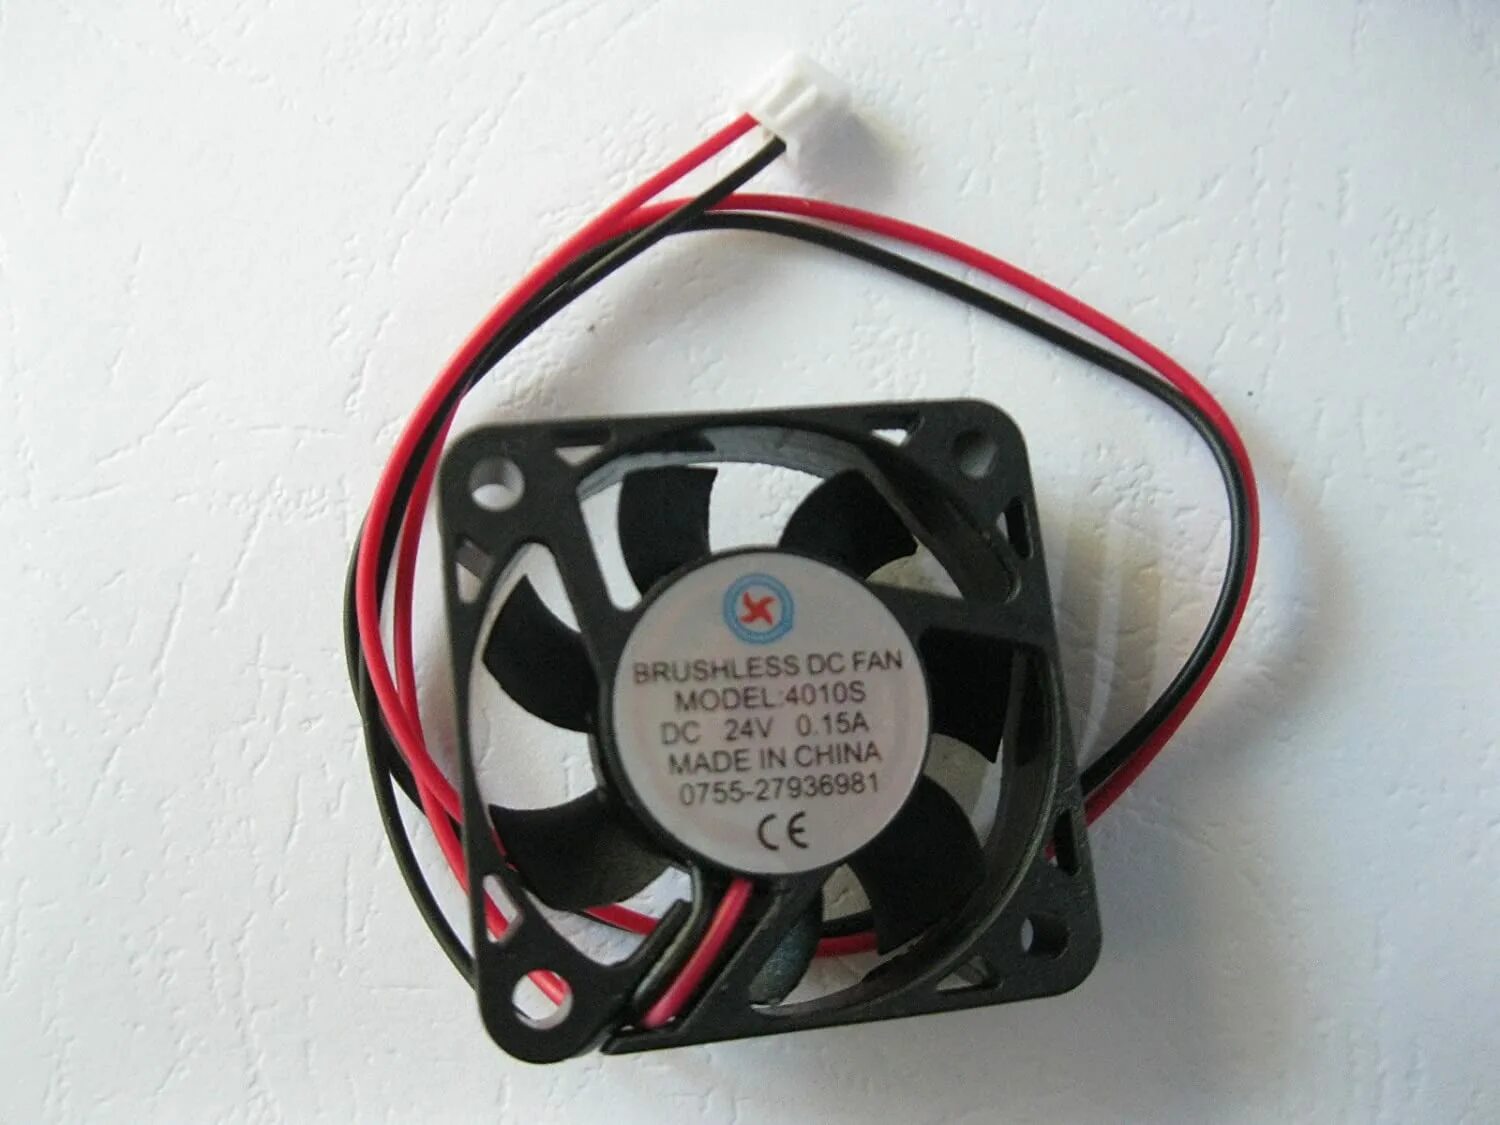 Вентилятор fan 2. Вентилятор Brushless DC Fan XDR 50 12v. Кулер DC Brushless ksb0405hb. Вентилятор 4010 24v. DG Brushless Fan DC 5v 0.25a 80x80x10mm без подсветки.